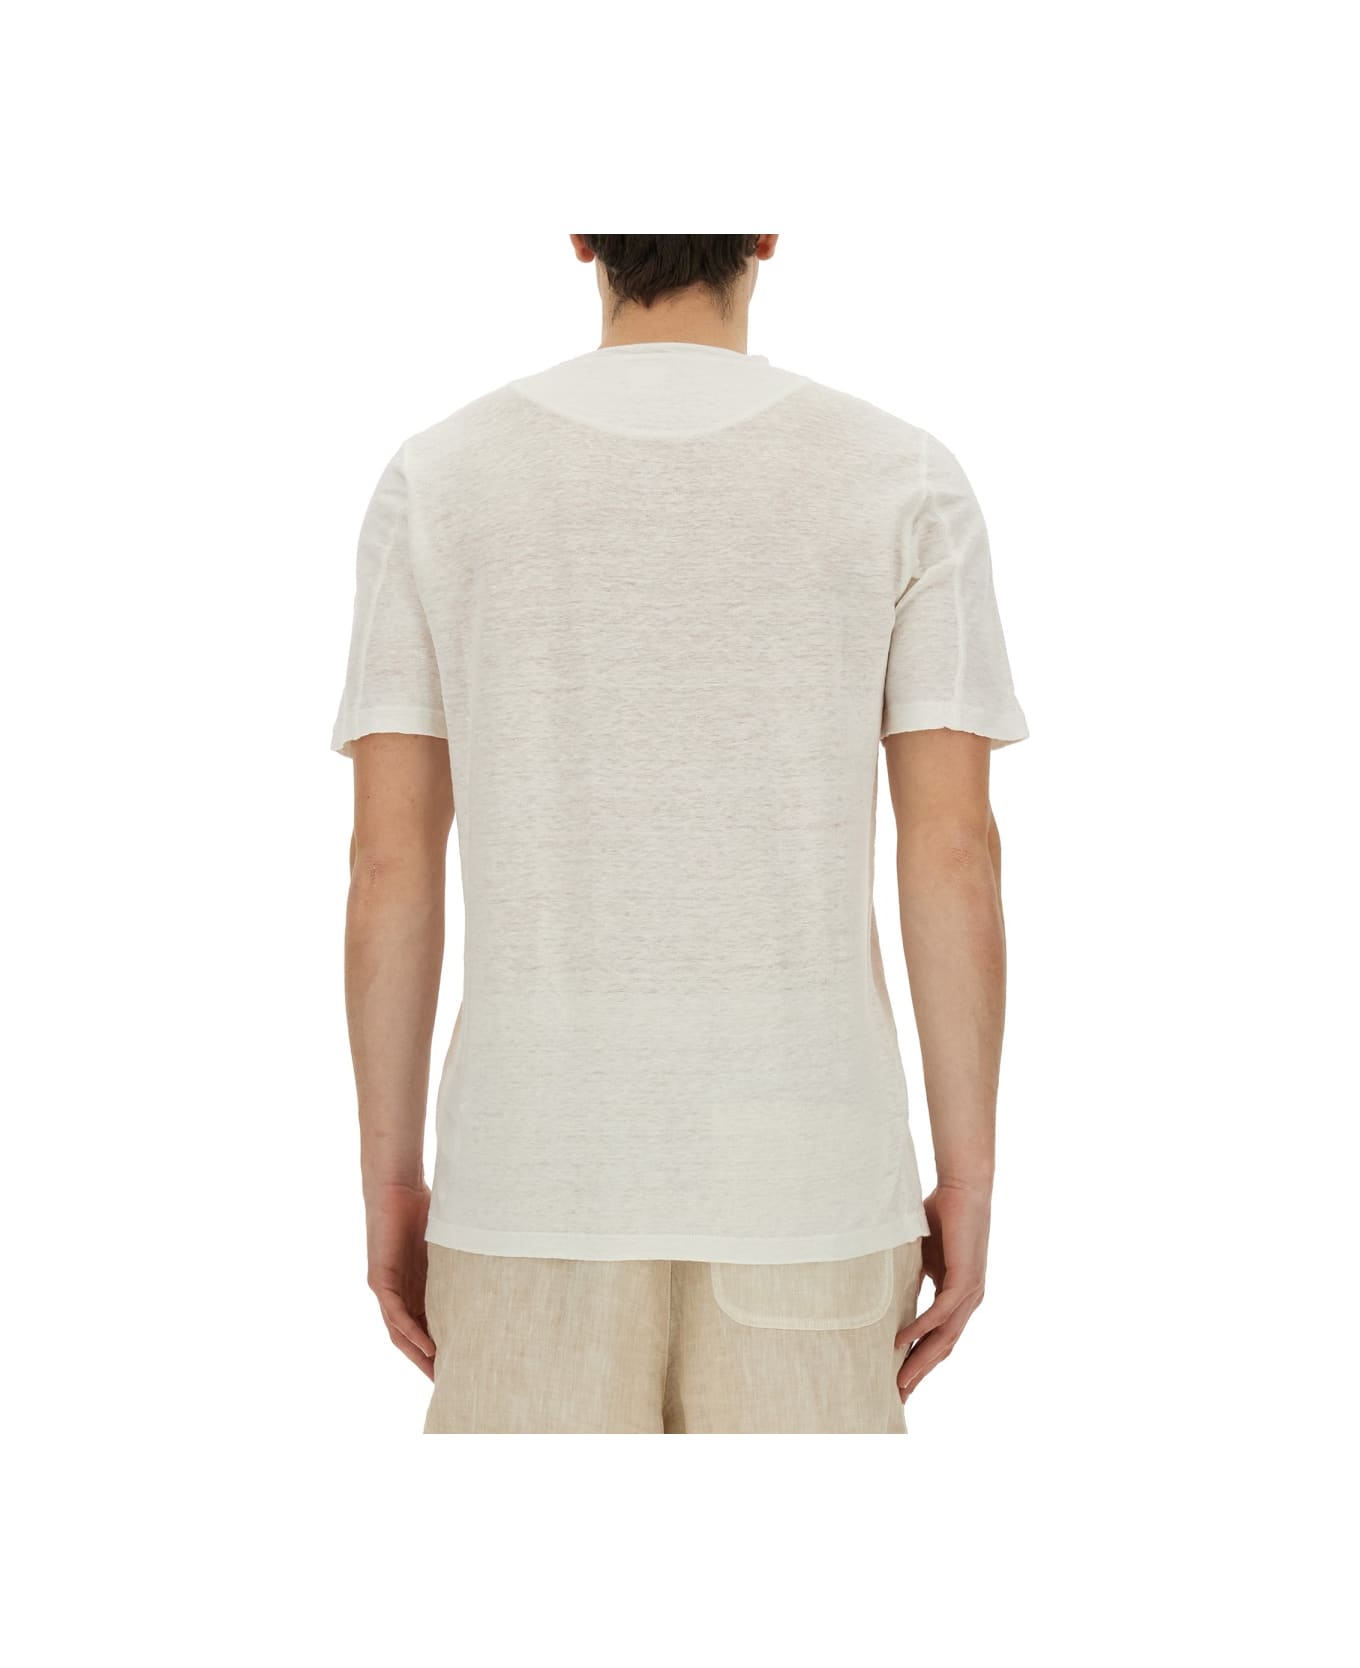 120% Lino Linen T-shirt - WHITE